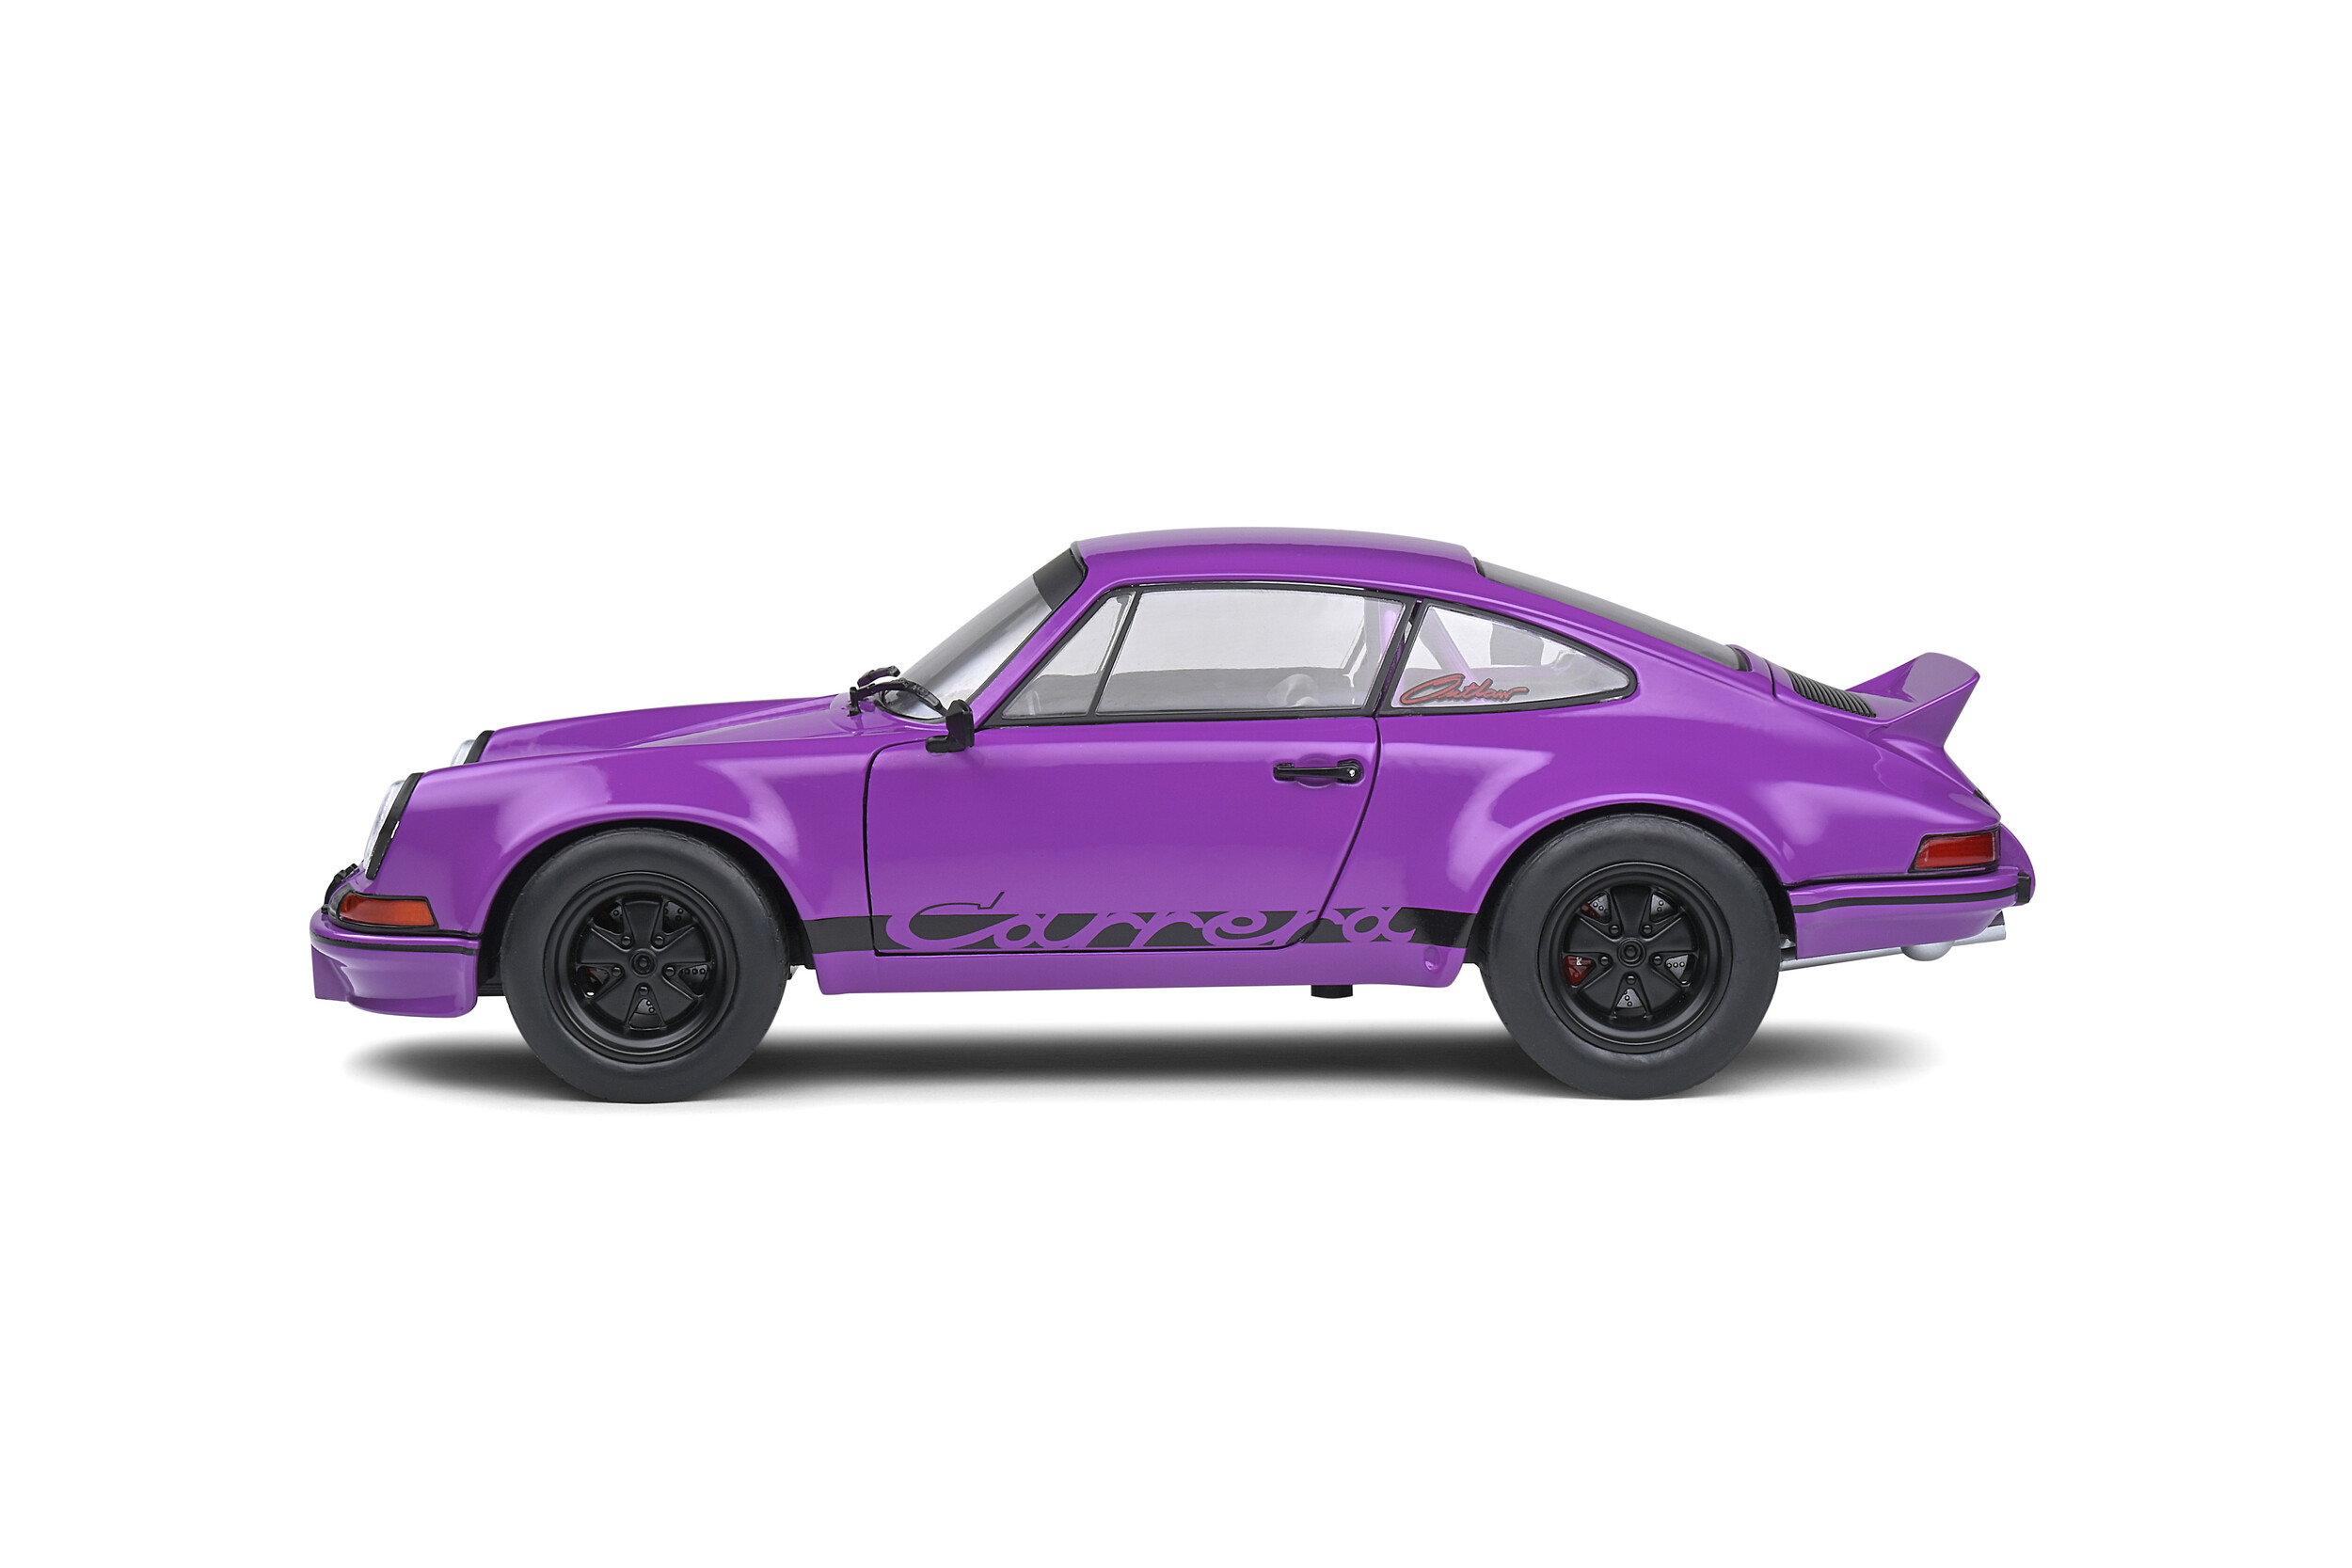 Macheta - Porsche 911 RSR Purple - Street Fighter - 1973 | Solido image2